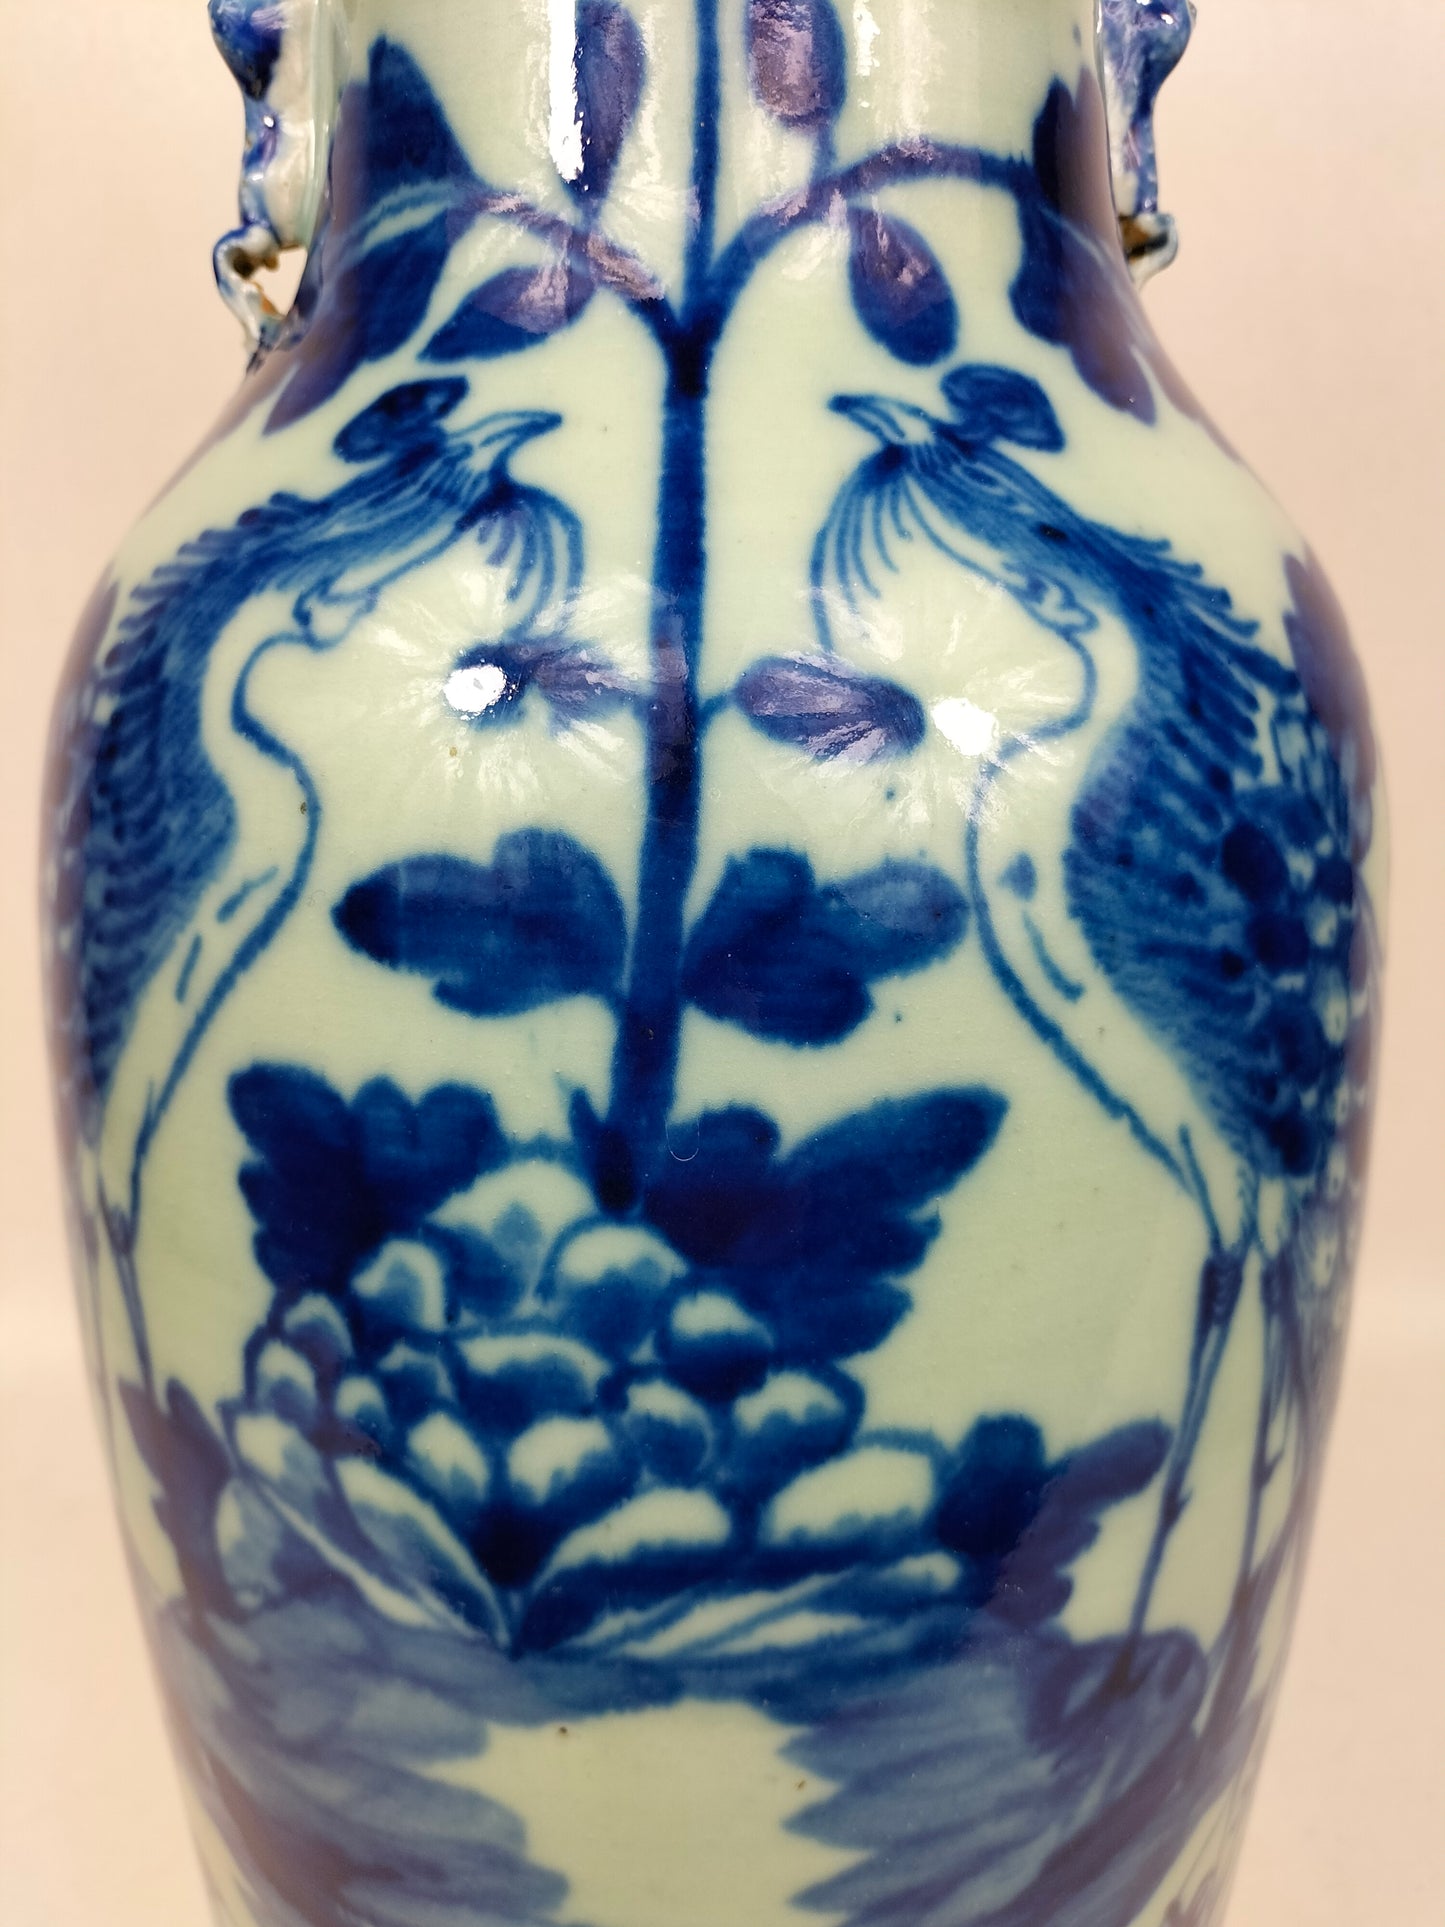 Grand vase chinois antique couleur céladon à décor d'oiseaux et de fleurs // Dynastie Qing - 19ème siècle